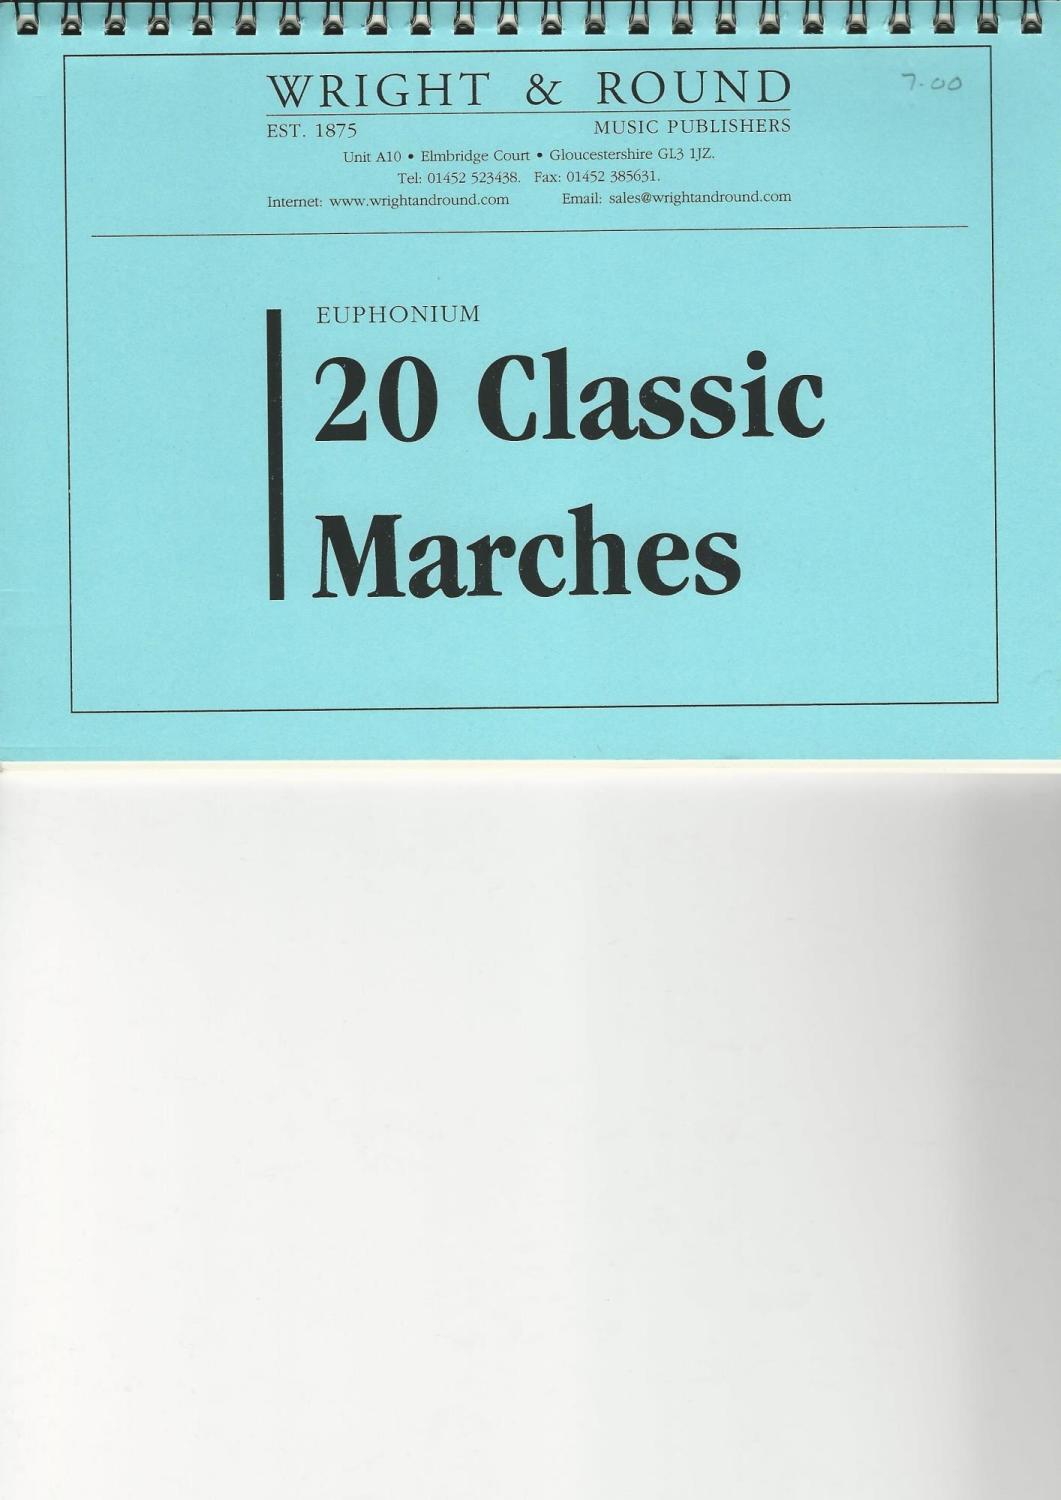 20 Classic Marches - Euphonium